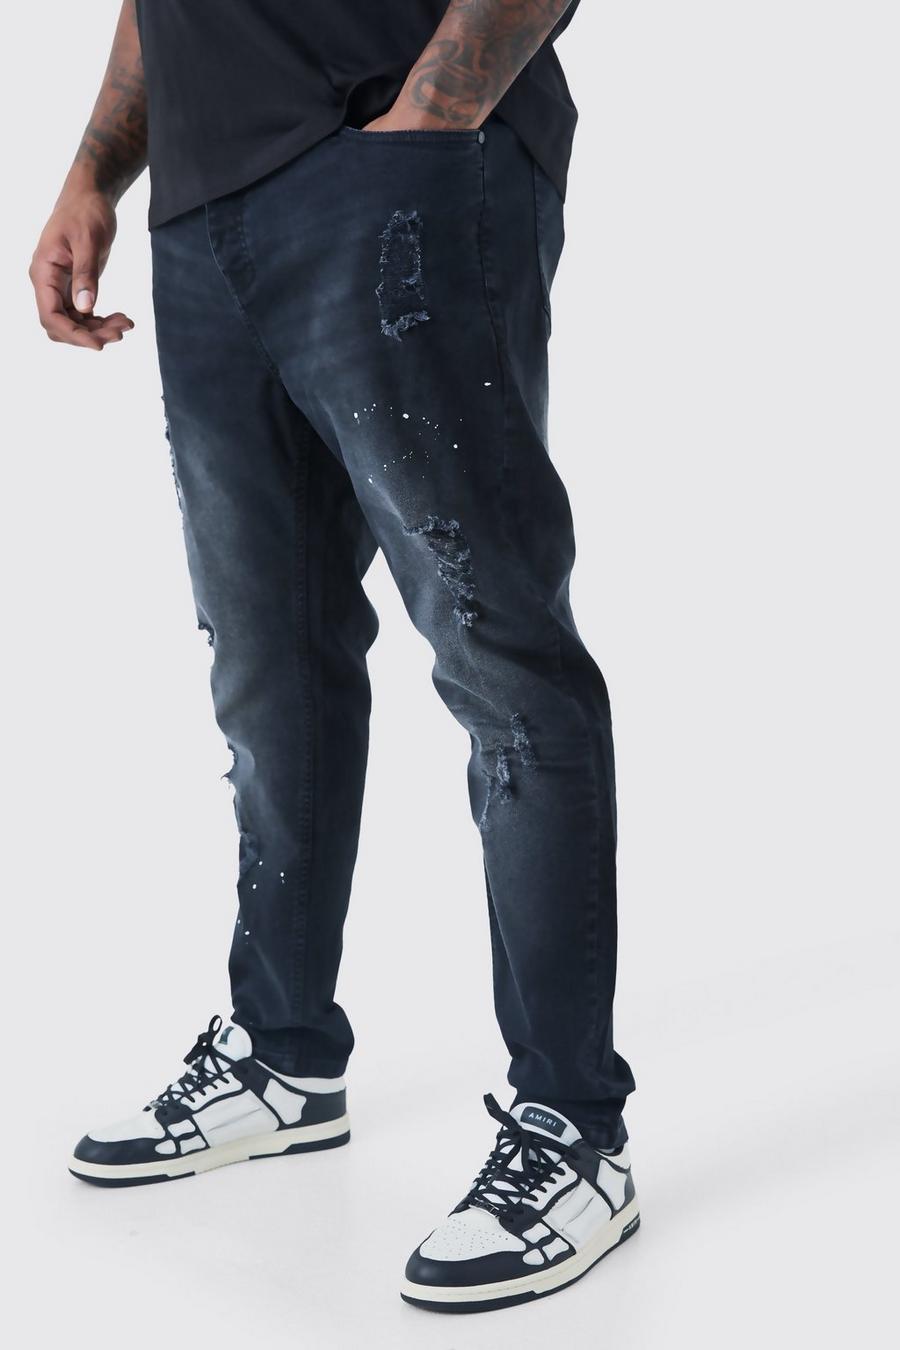 Plus zerrissene Super Skinny Jeans mit Farbspritzern, Washed black